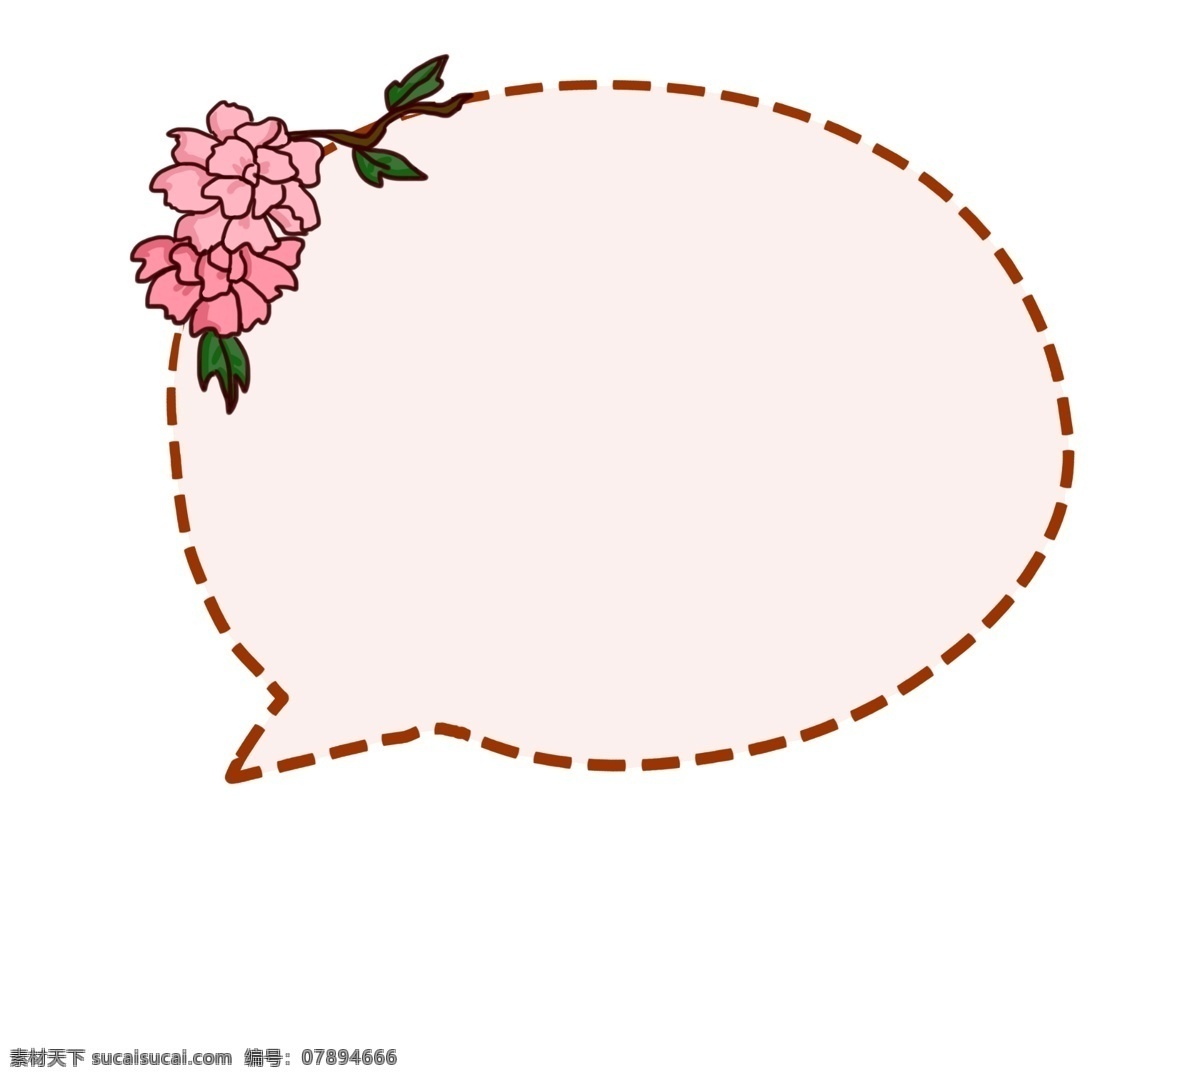 粉红色 唯美 边框 插画 花朵 美味 对话框 手绘 装饰 手绘插画 唯美边框 边框手绘插画 花朵装饰 文本框